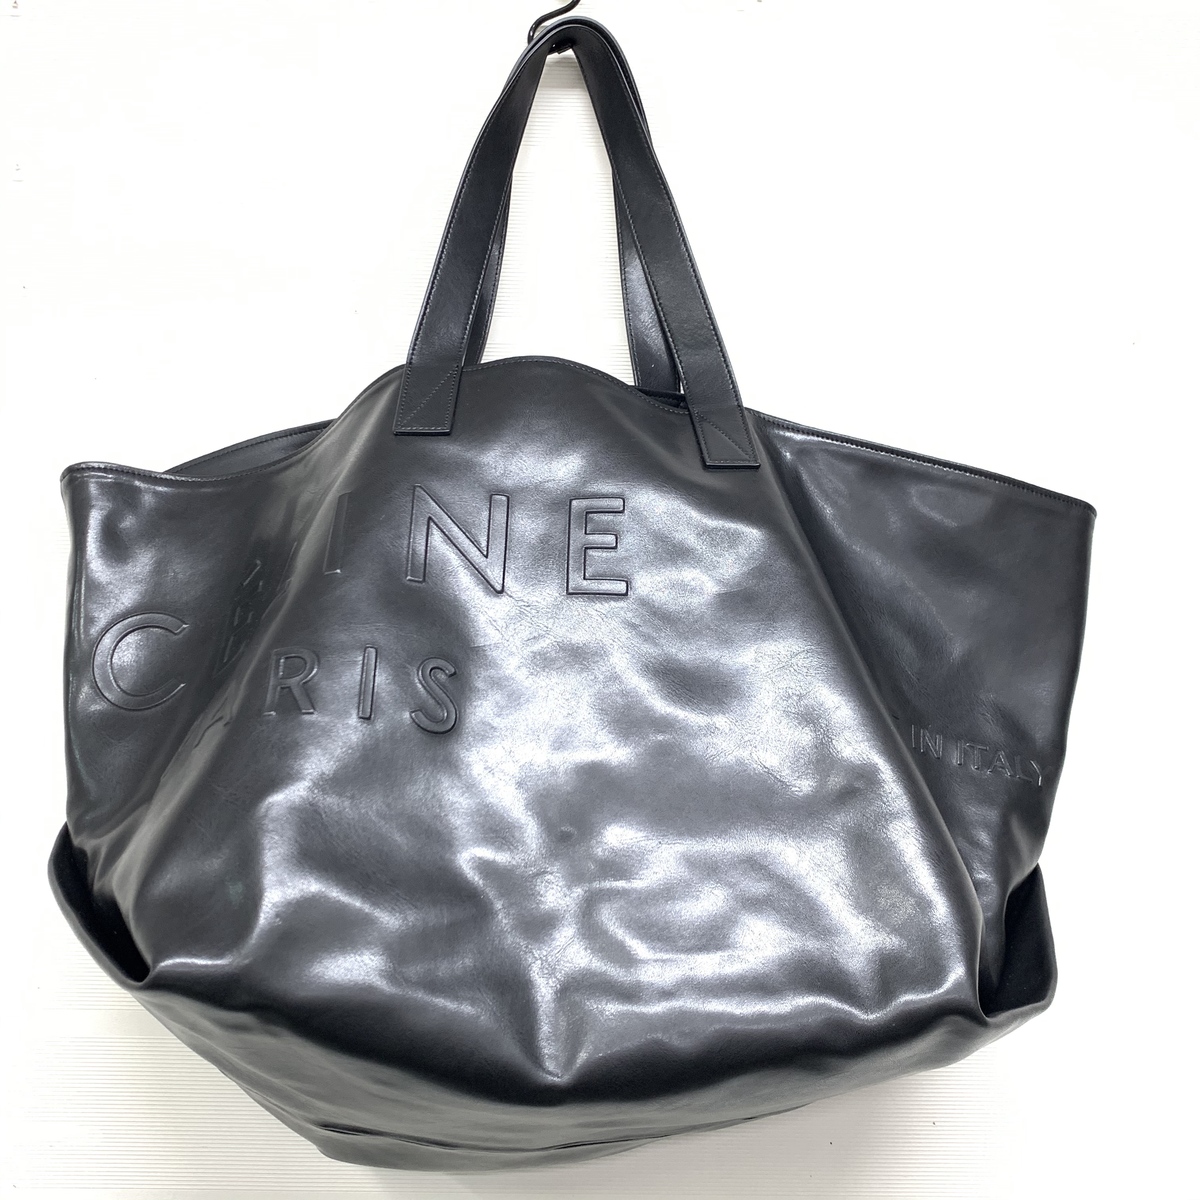 エコスタイル銀座本店で、セリーヌの黒のレザー素材のミディアムのカバのトートバッグを買取ました。 買取価格・実績 2019年10月26日公開情報